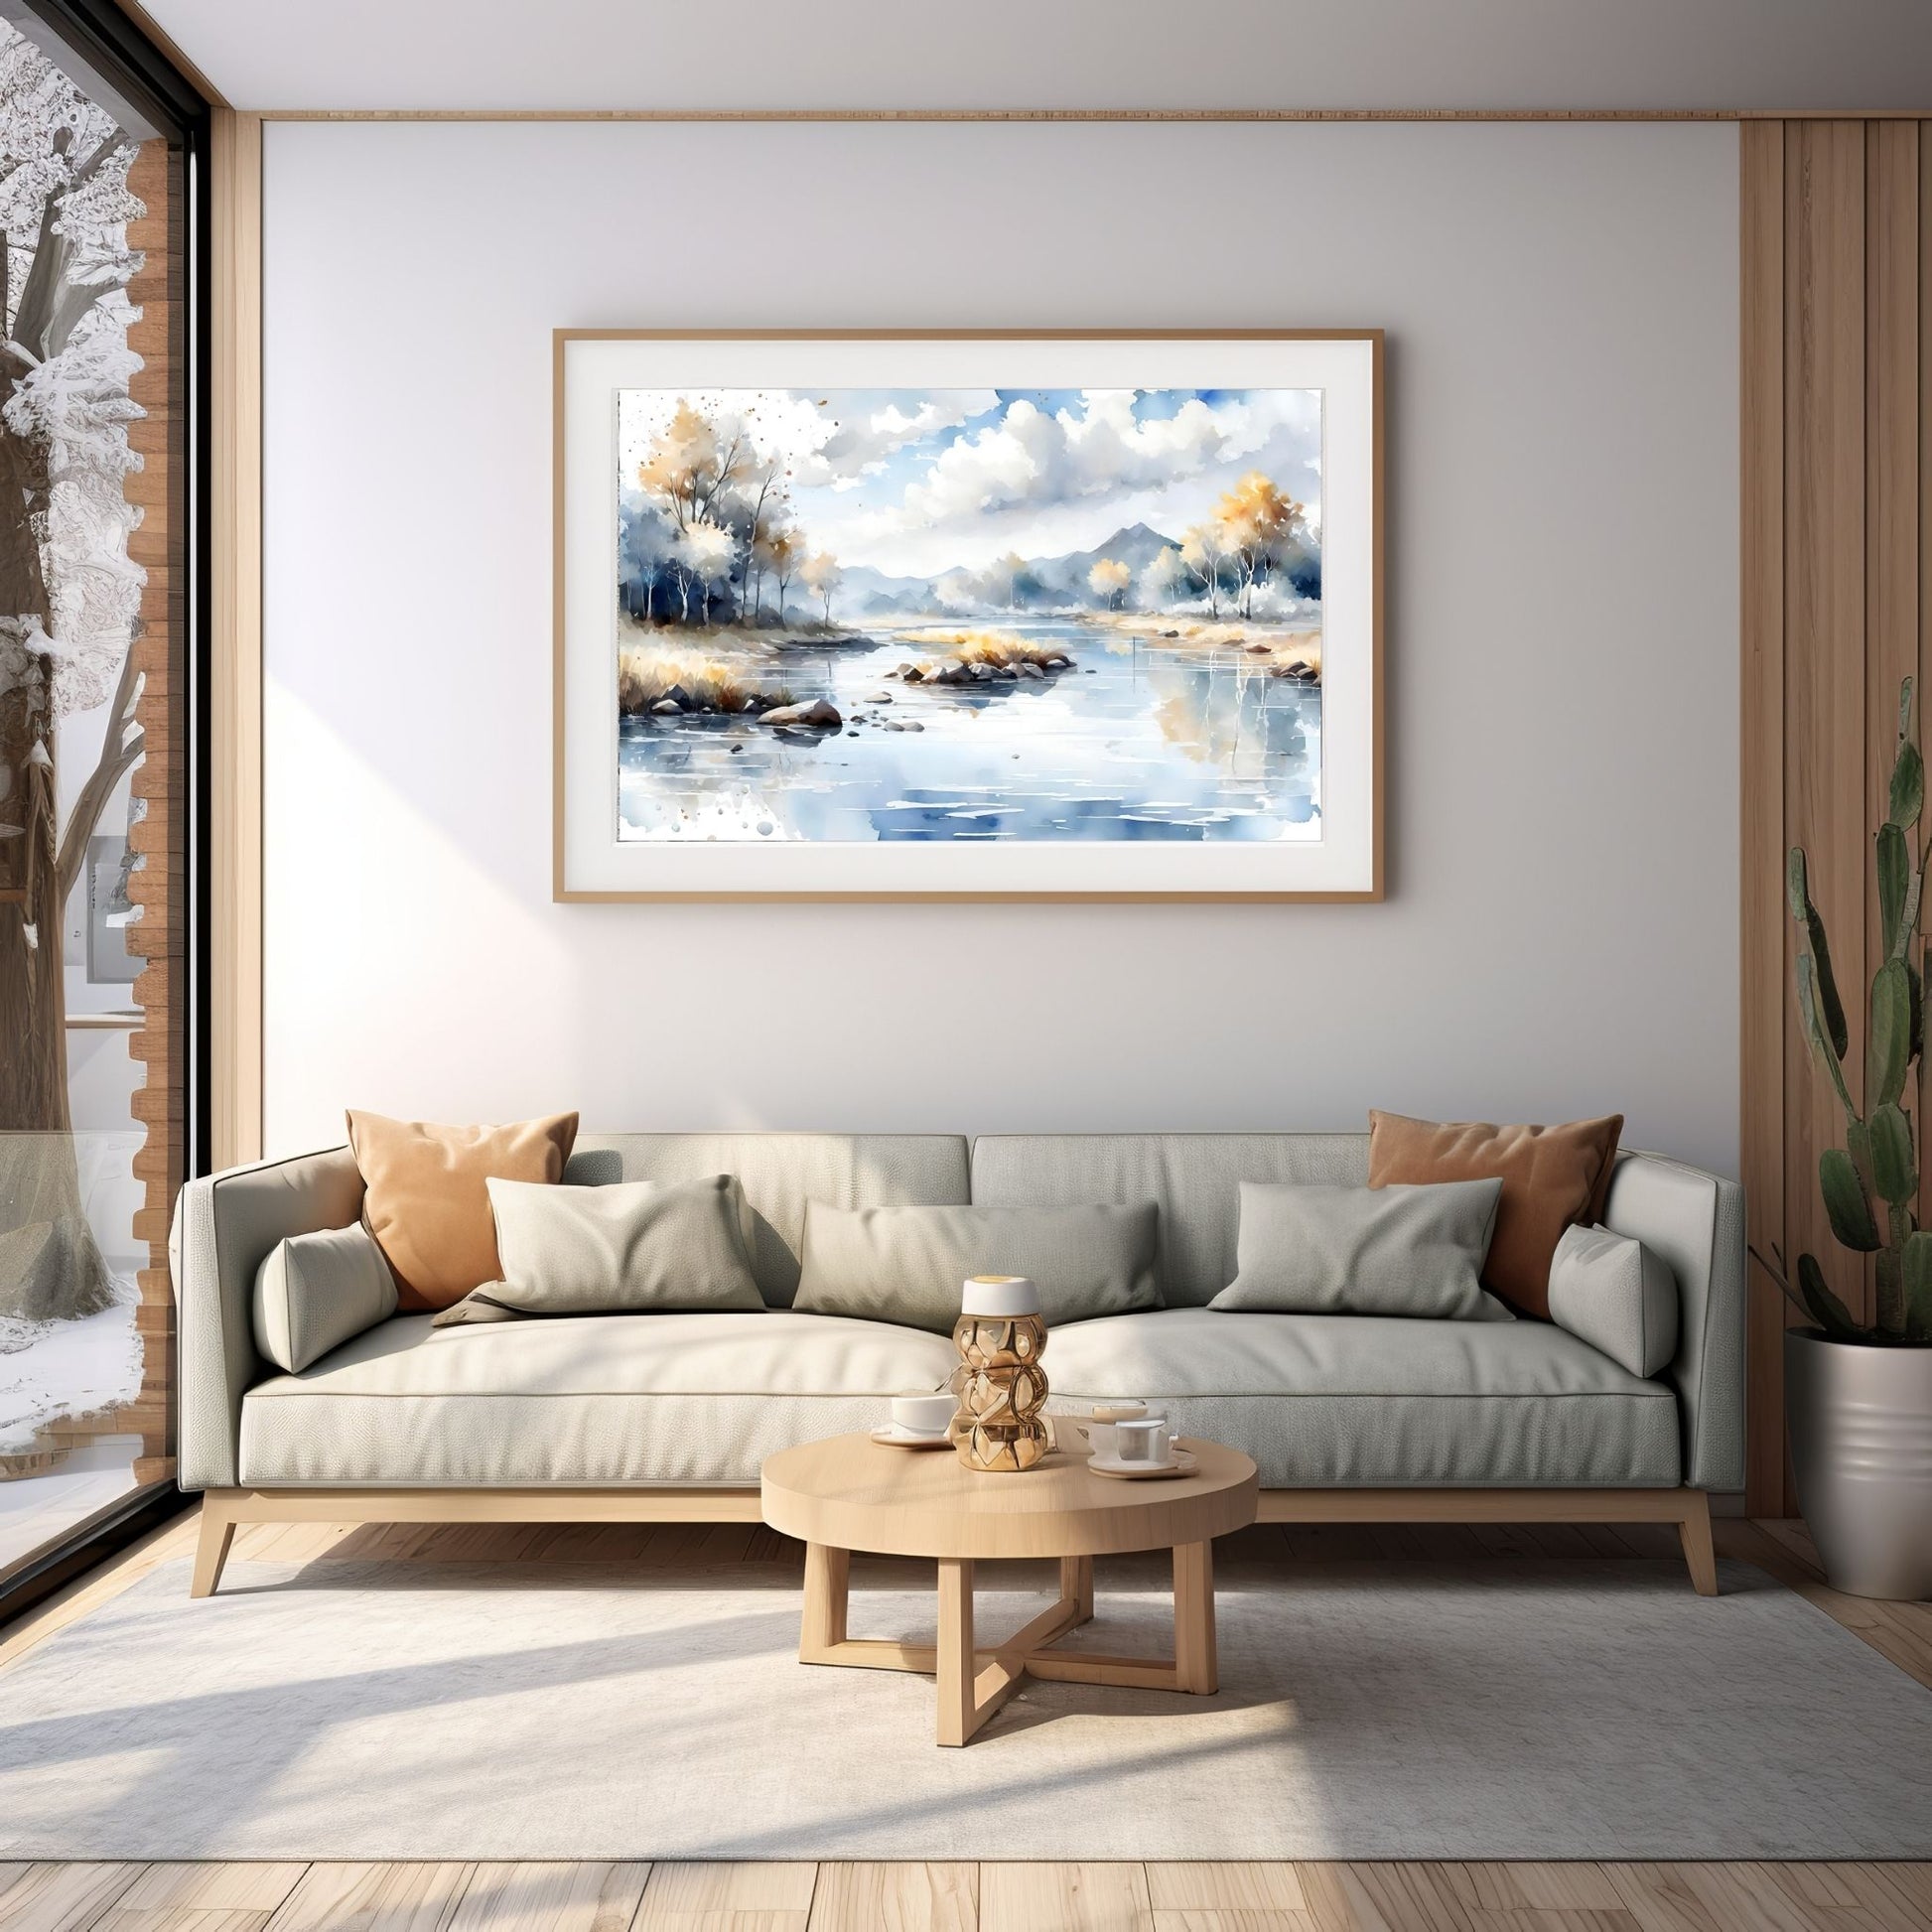 Digitalt kunstmaleri i akvarell som fanger essensen av en magisk høstdag, med et blendende landskap av skiftende løvverk, majestetiske trær og en sakteflytende elv. Illustrasjonsfoto viser motivet som plakat i en ramme som henger over en sofa.